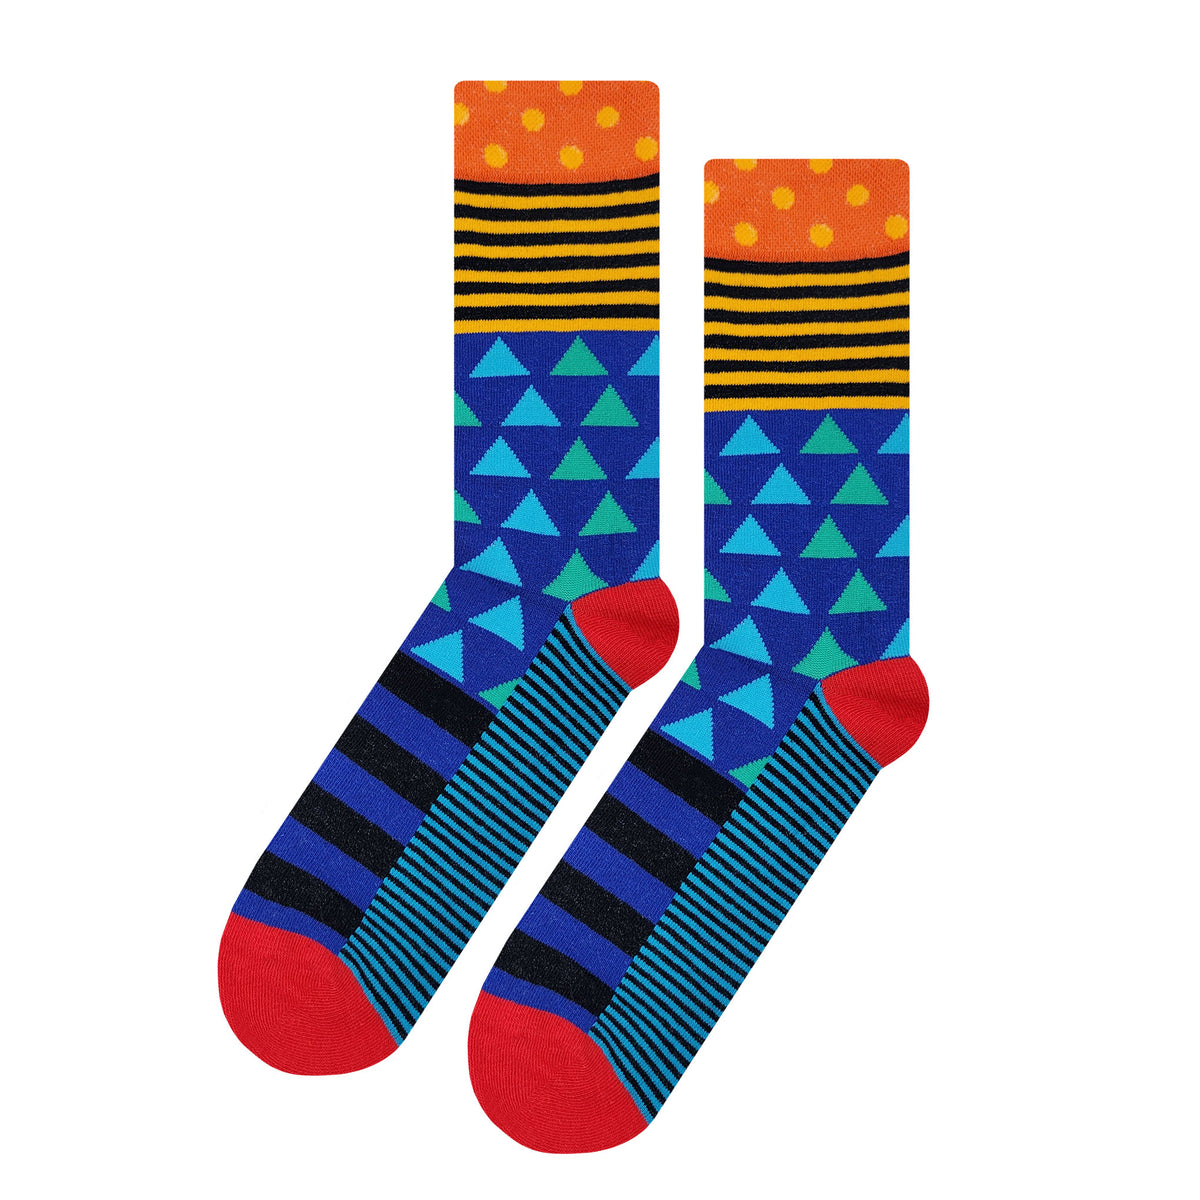 Epic Fun Socks for Men, Women & Kids, Cool Novelty Socks